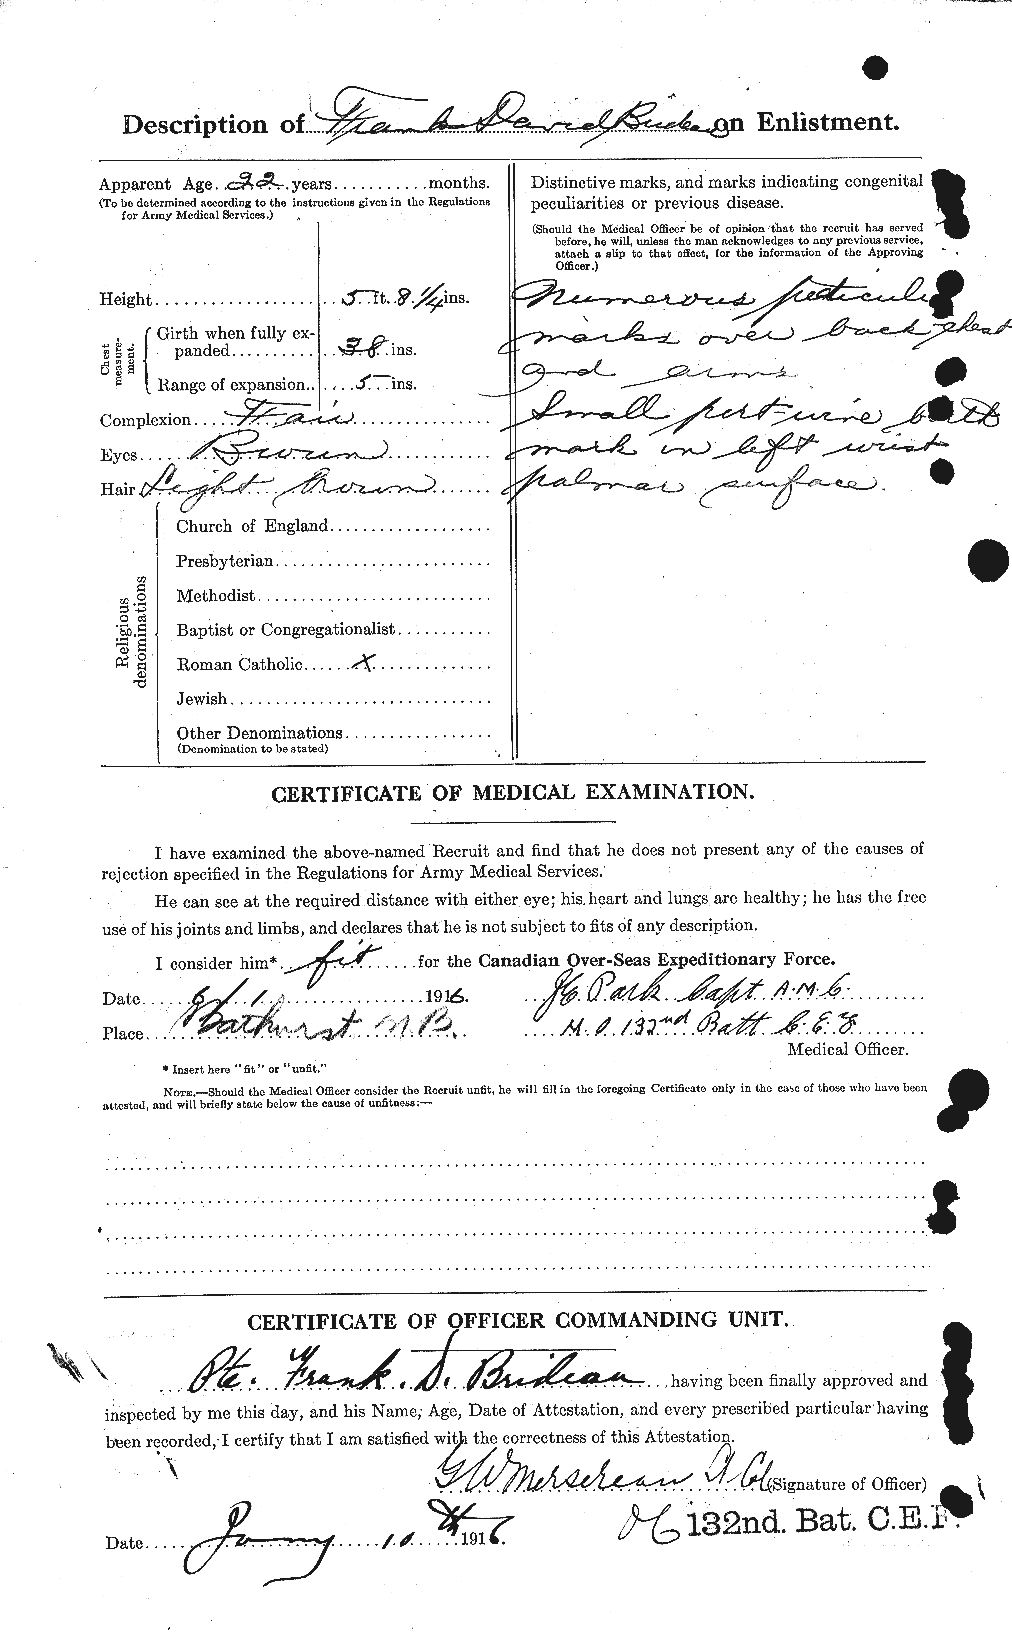 Dossiers du Personnel de la Première Guerre mondiale - CEC 261258b